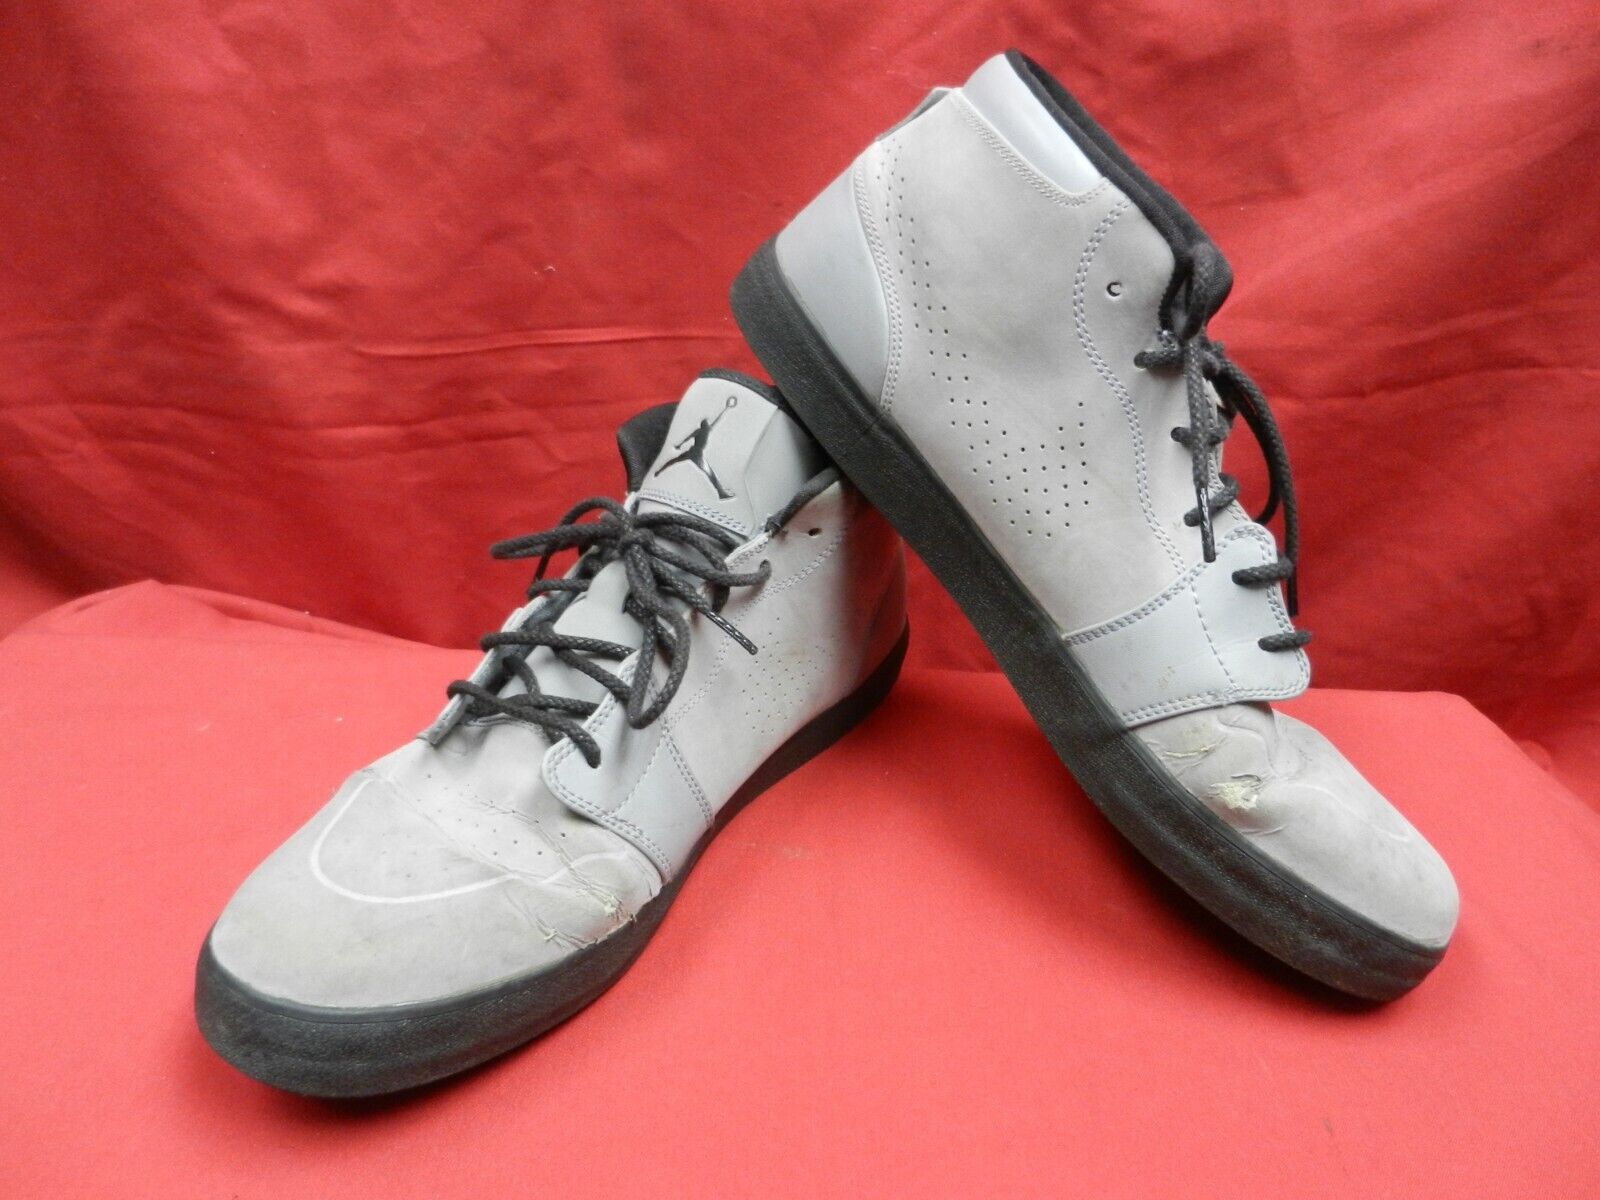 Nike 535992-003 Jordan V1 Air Force 1 High Top Grey Sneakers Size 14